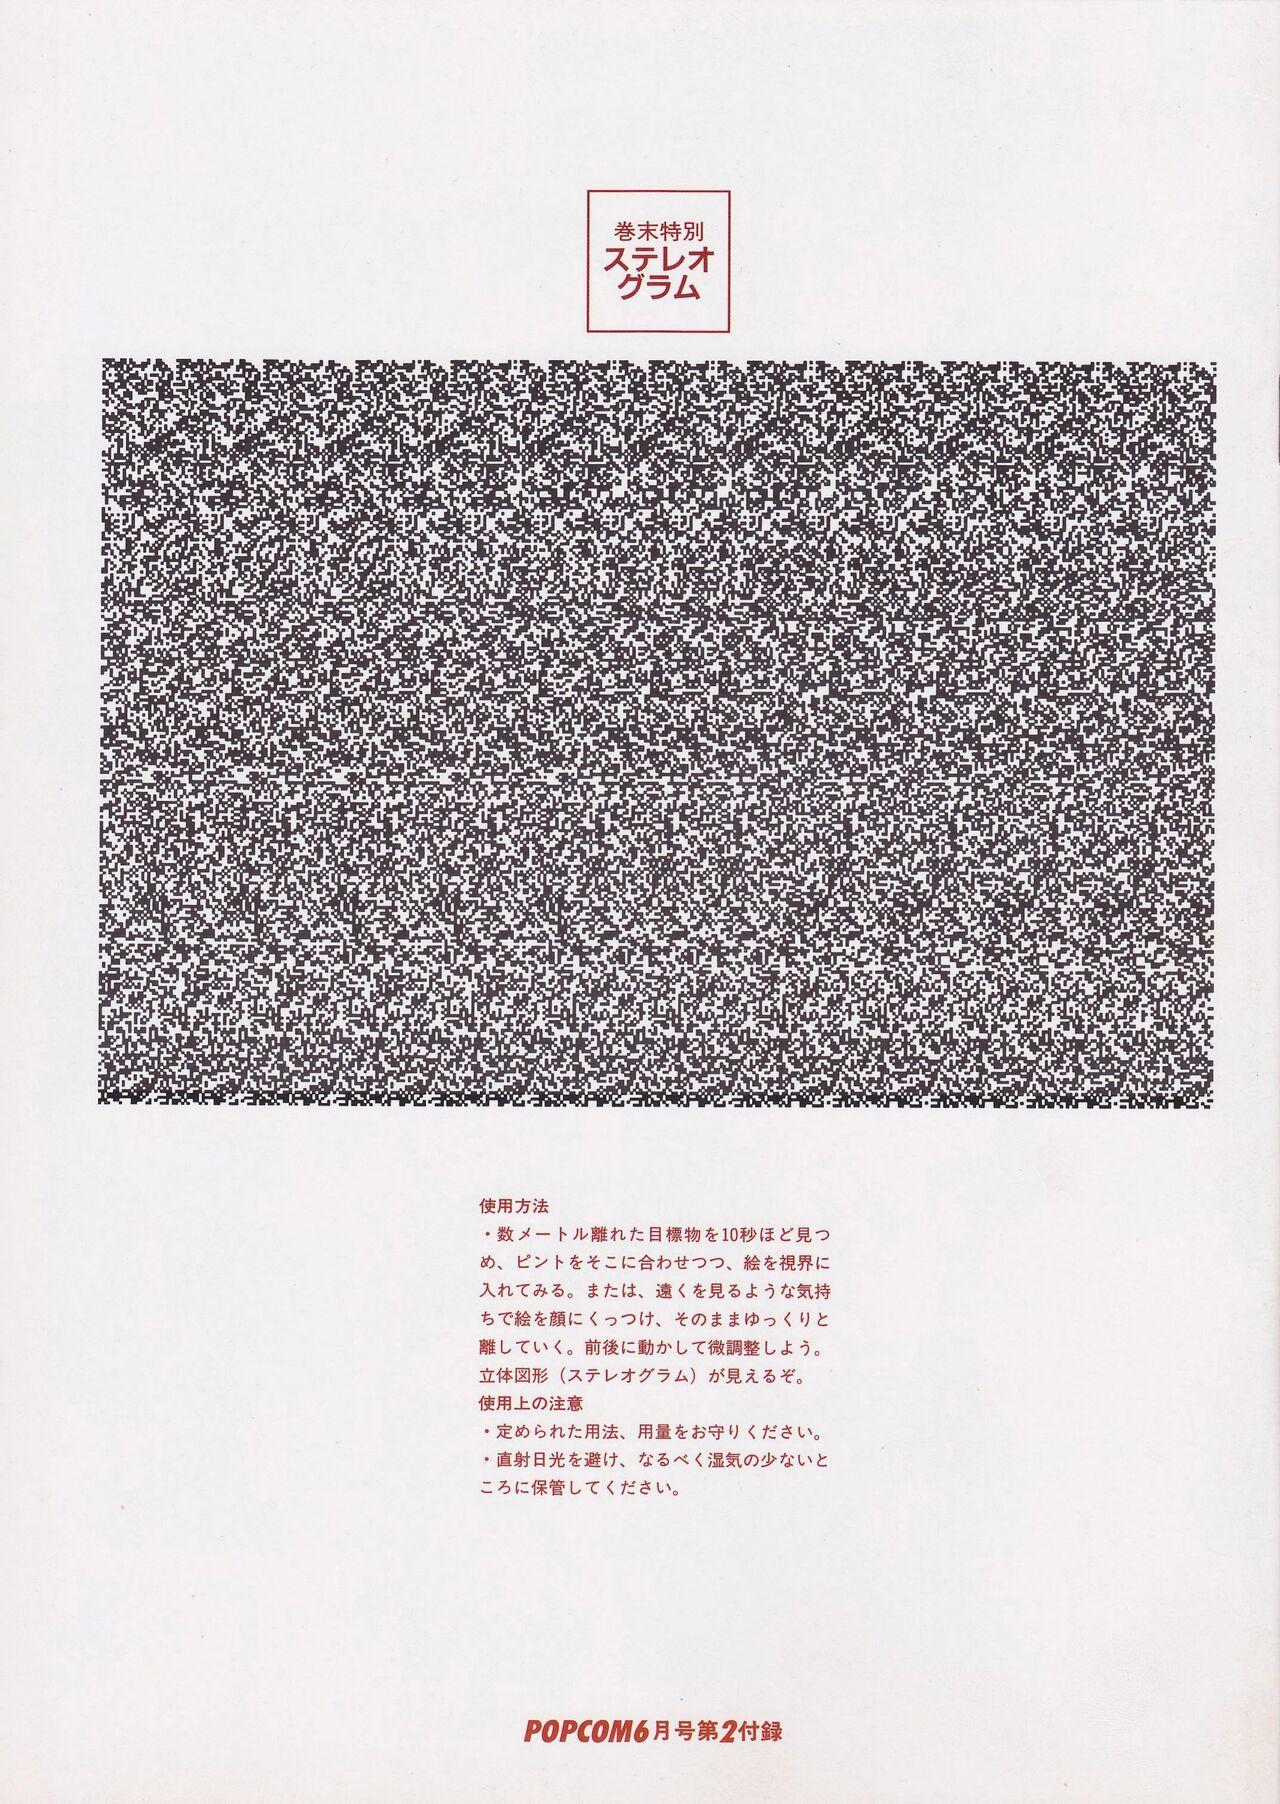 Bishoujo Seminar '93 DX Limited 20